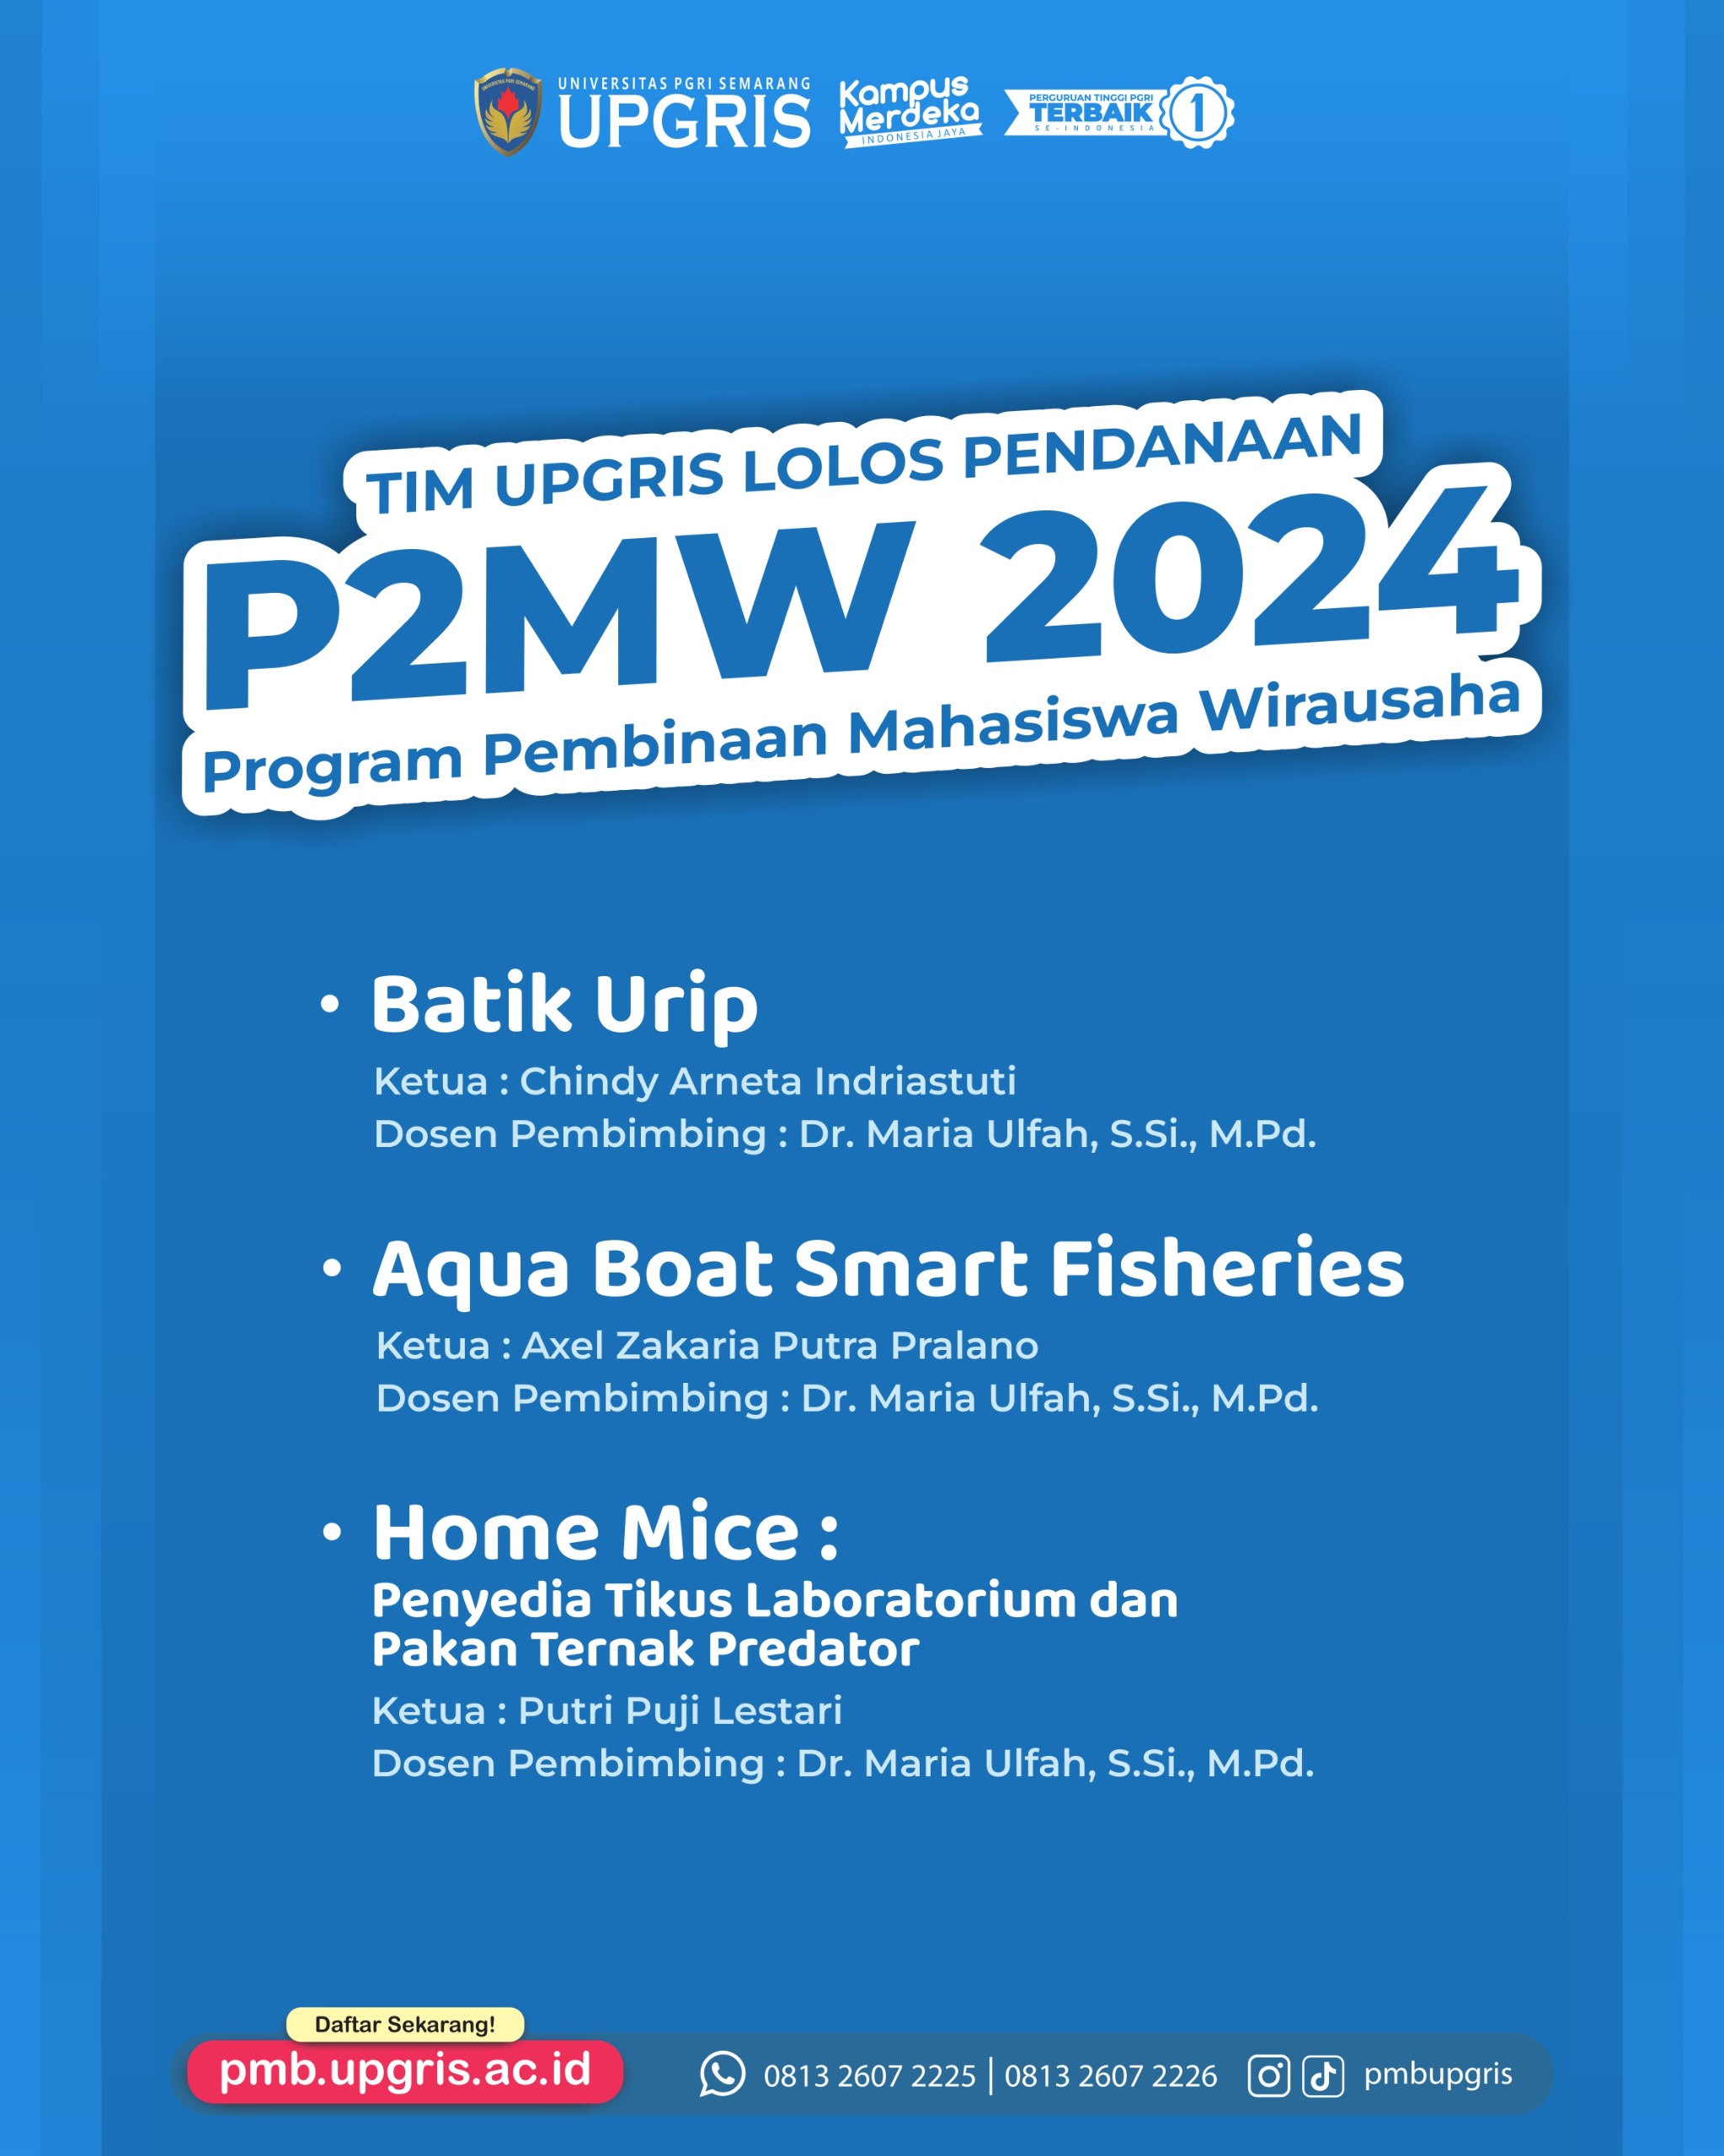 Selamat dan sukses 3 Tim Universitas PGRI Semarang Lolos Pendanaan P2MW 2024